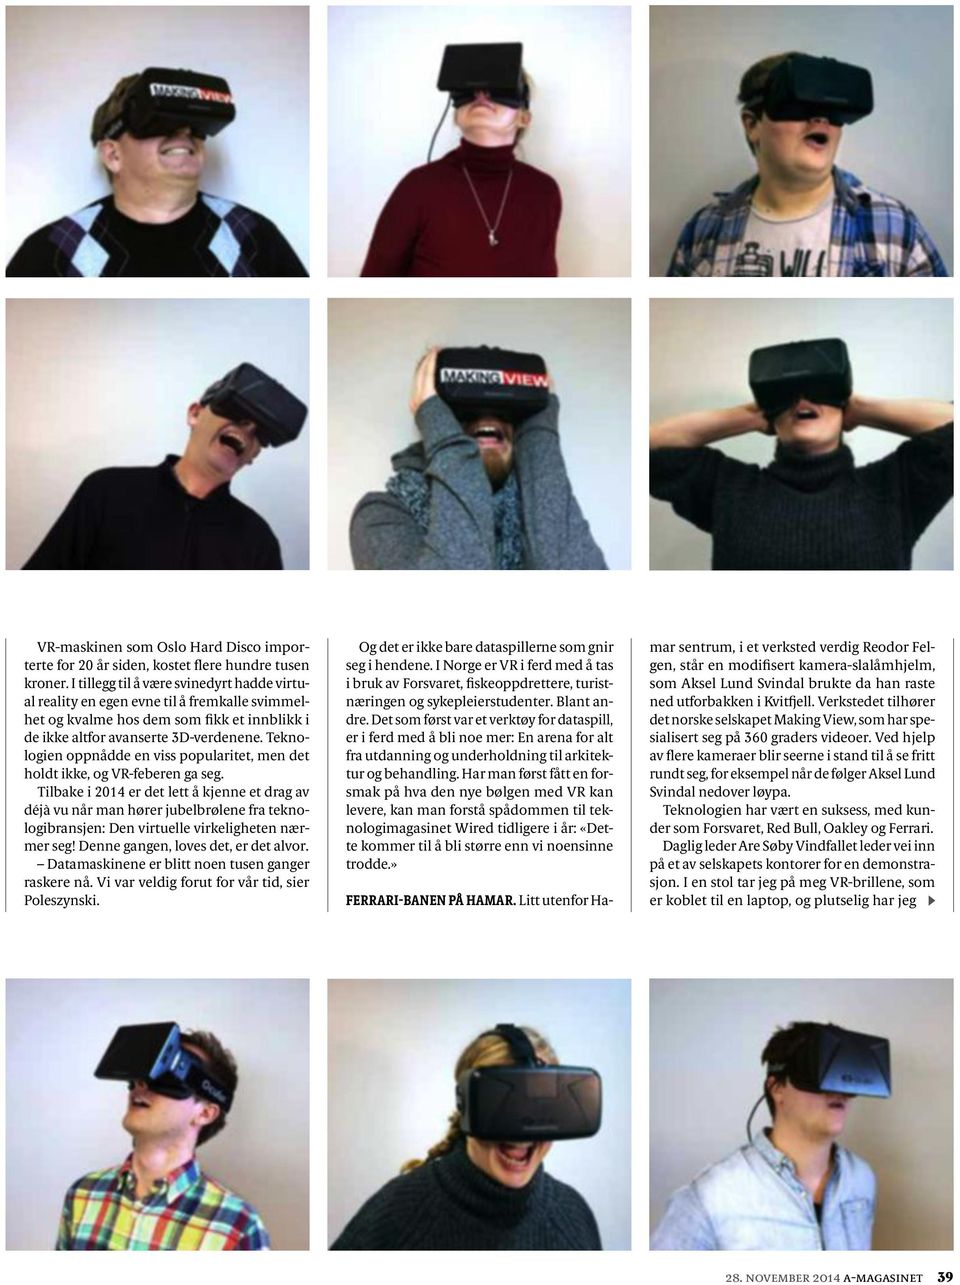 Teknologien oppnådde en viss popularitet, men det holdt ikke, og VR-feberen ga seg.